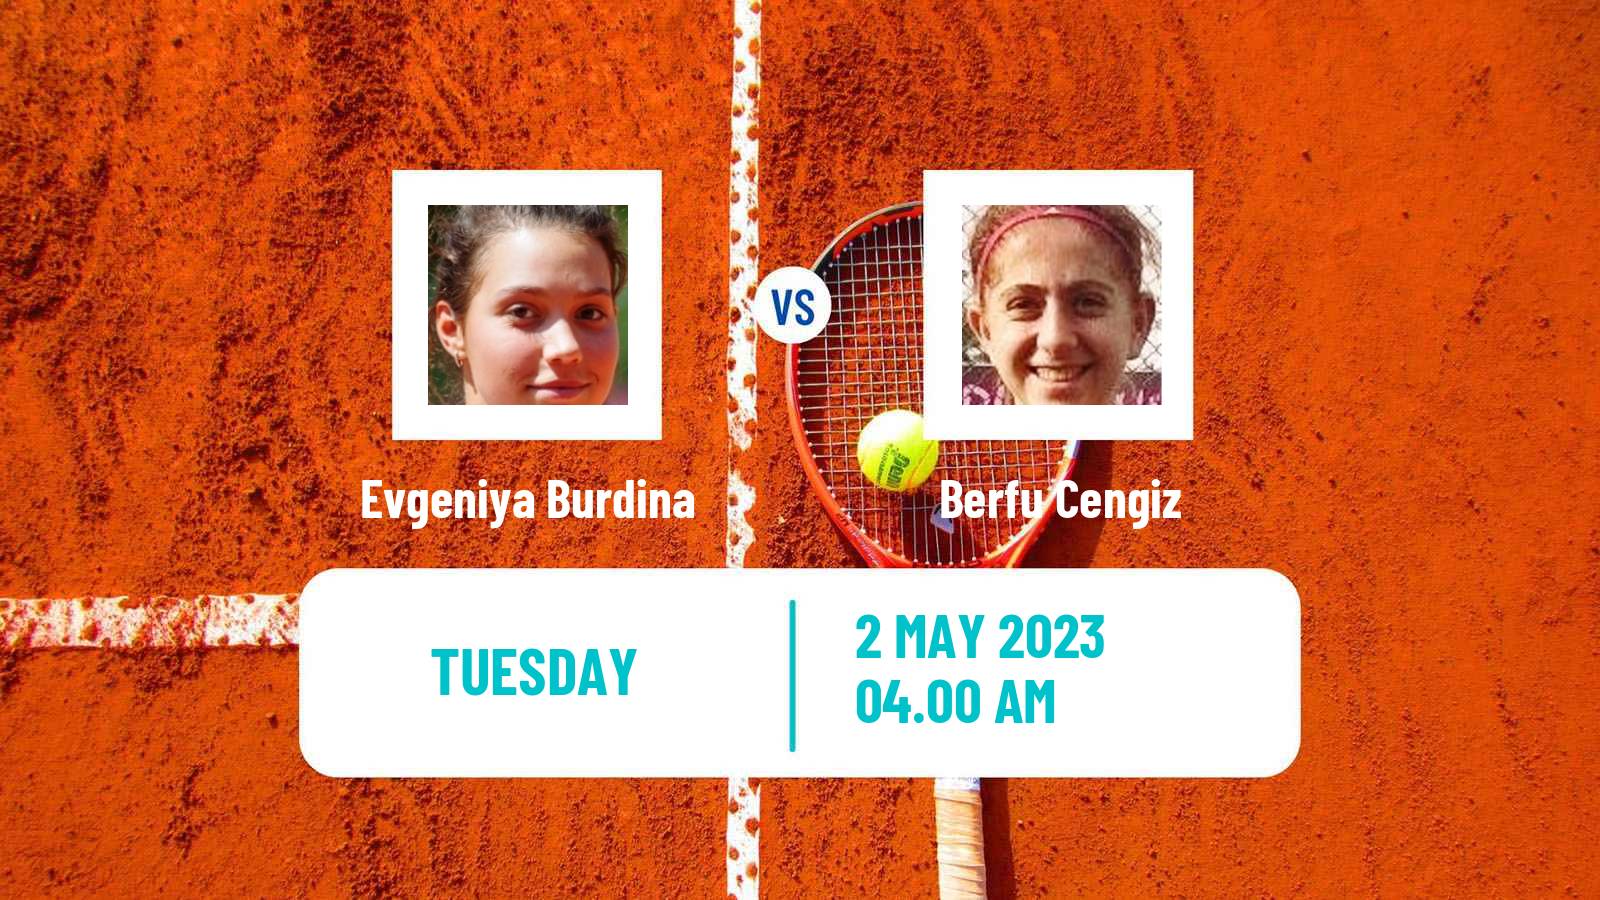 Tennis ITF Tournaments Evgeniya Burdina - Berfu Cengiz